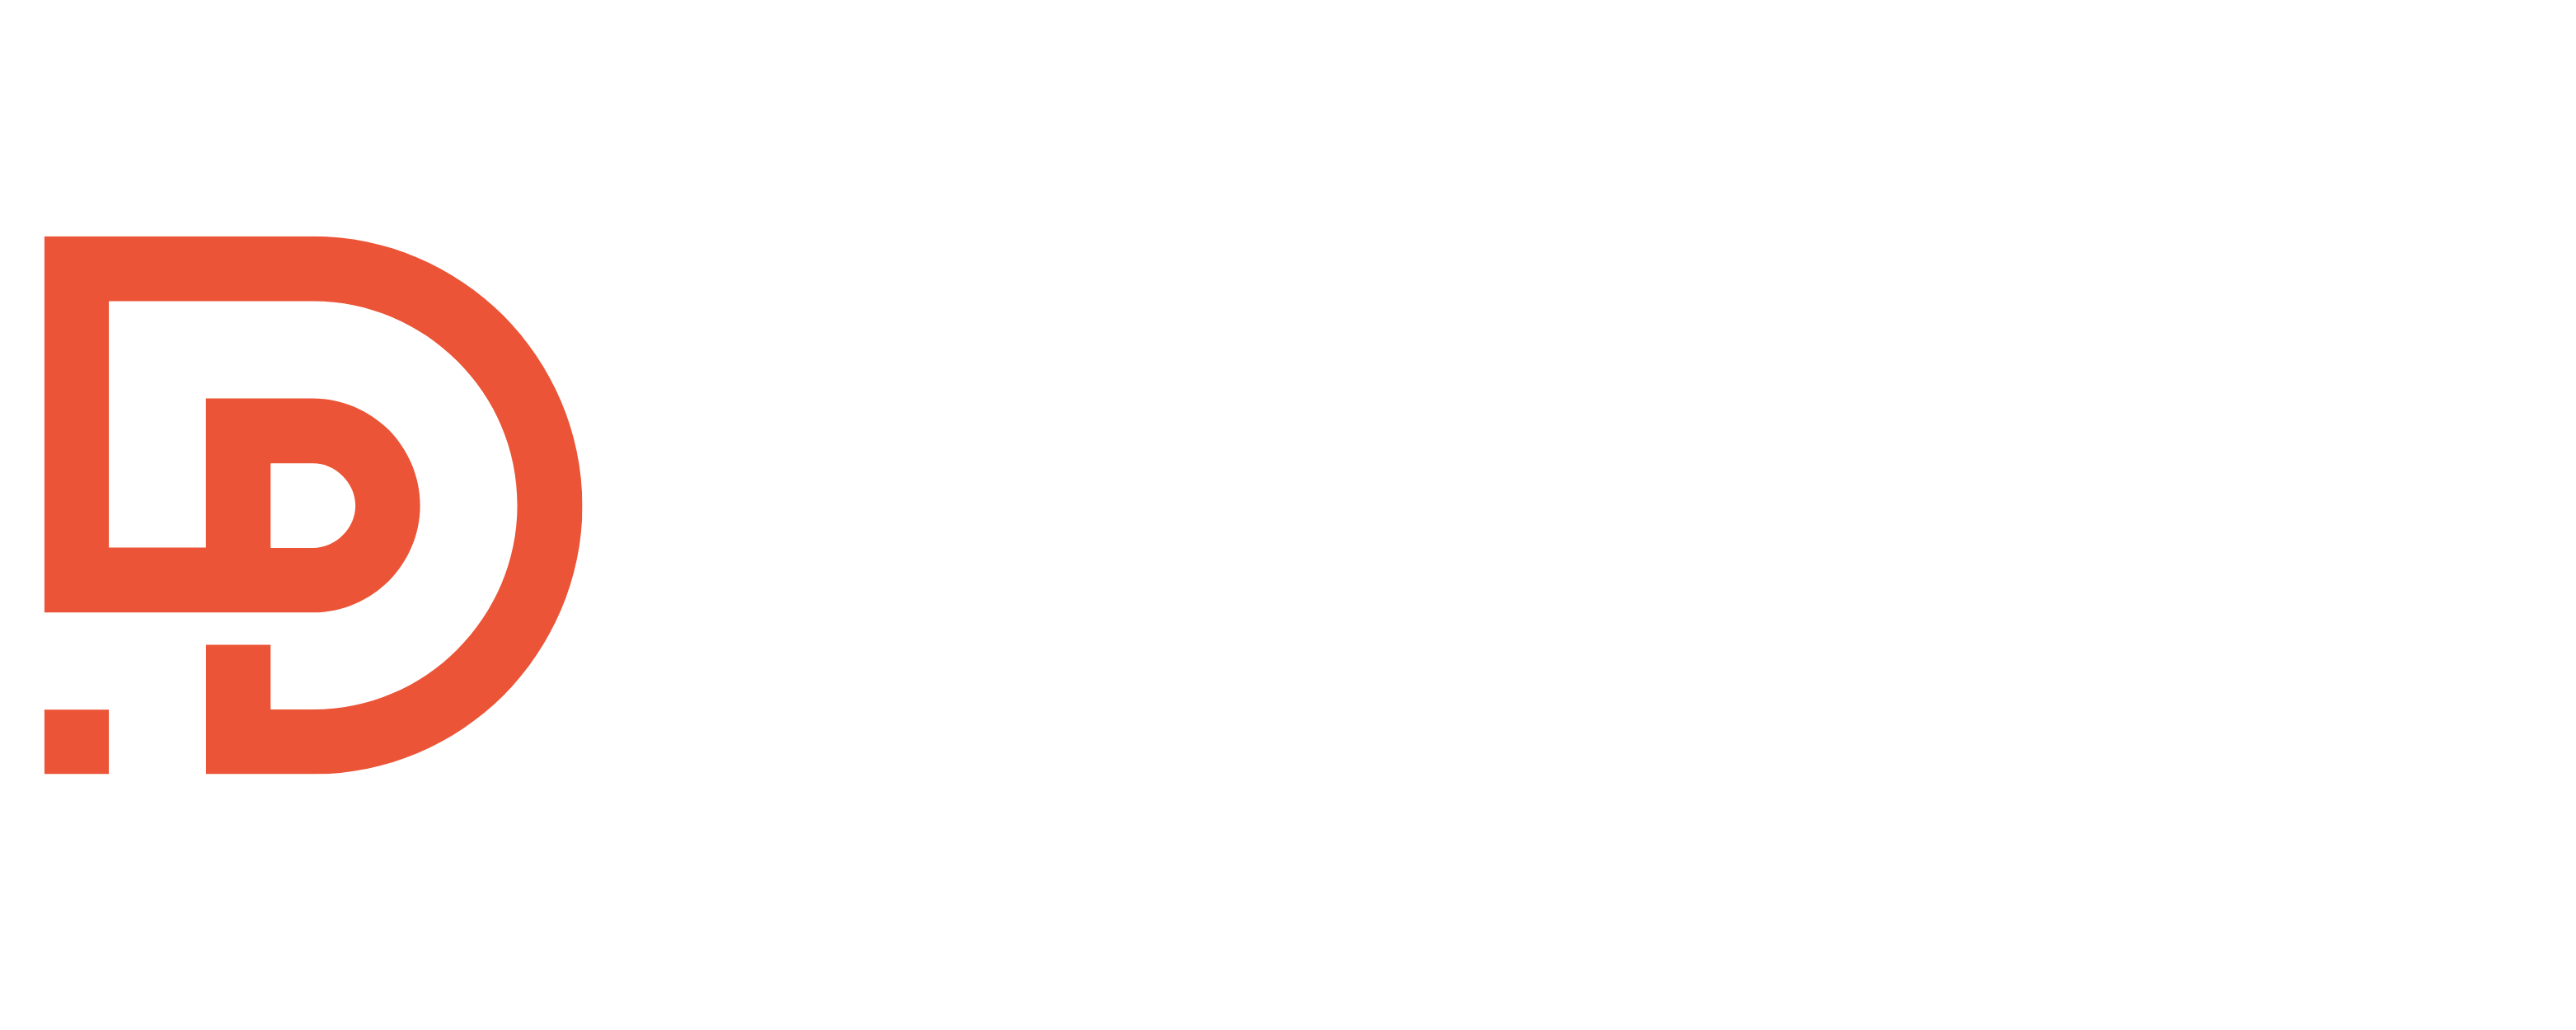 DigiCom360